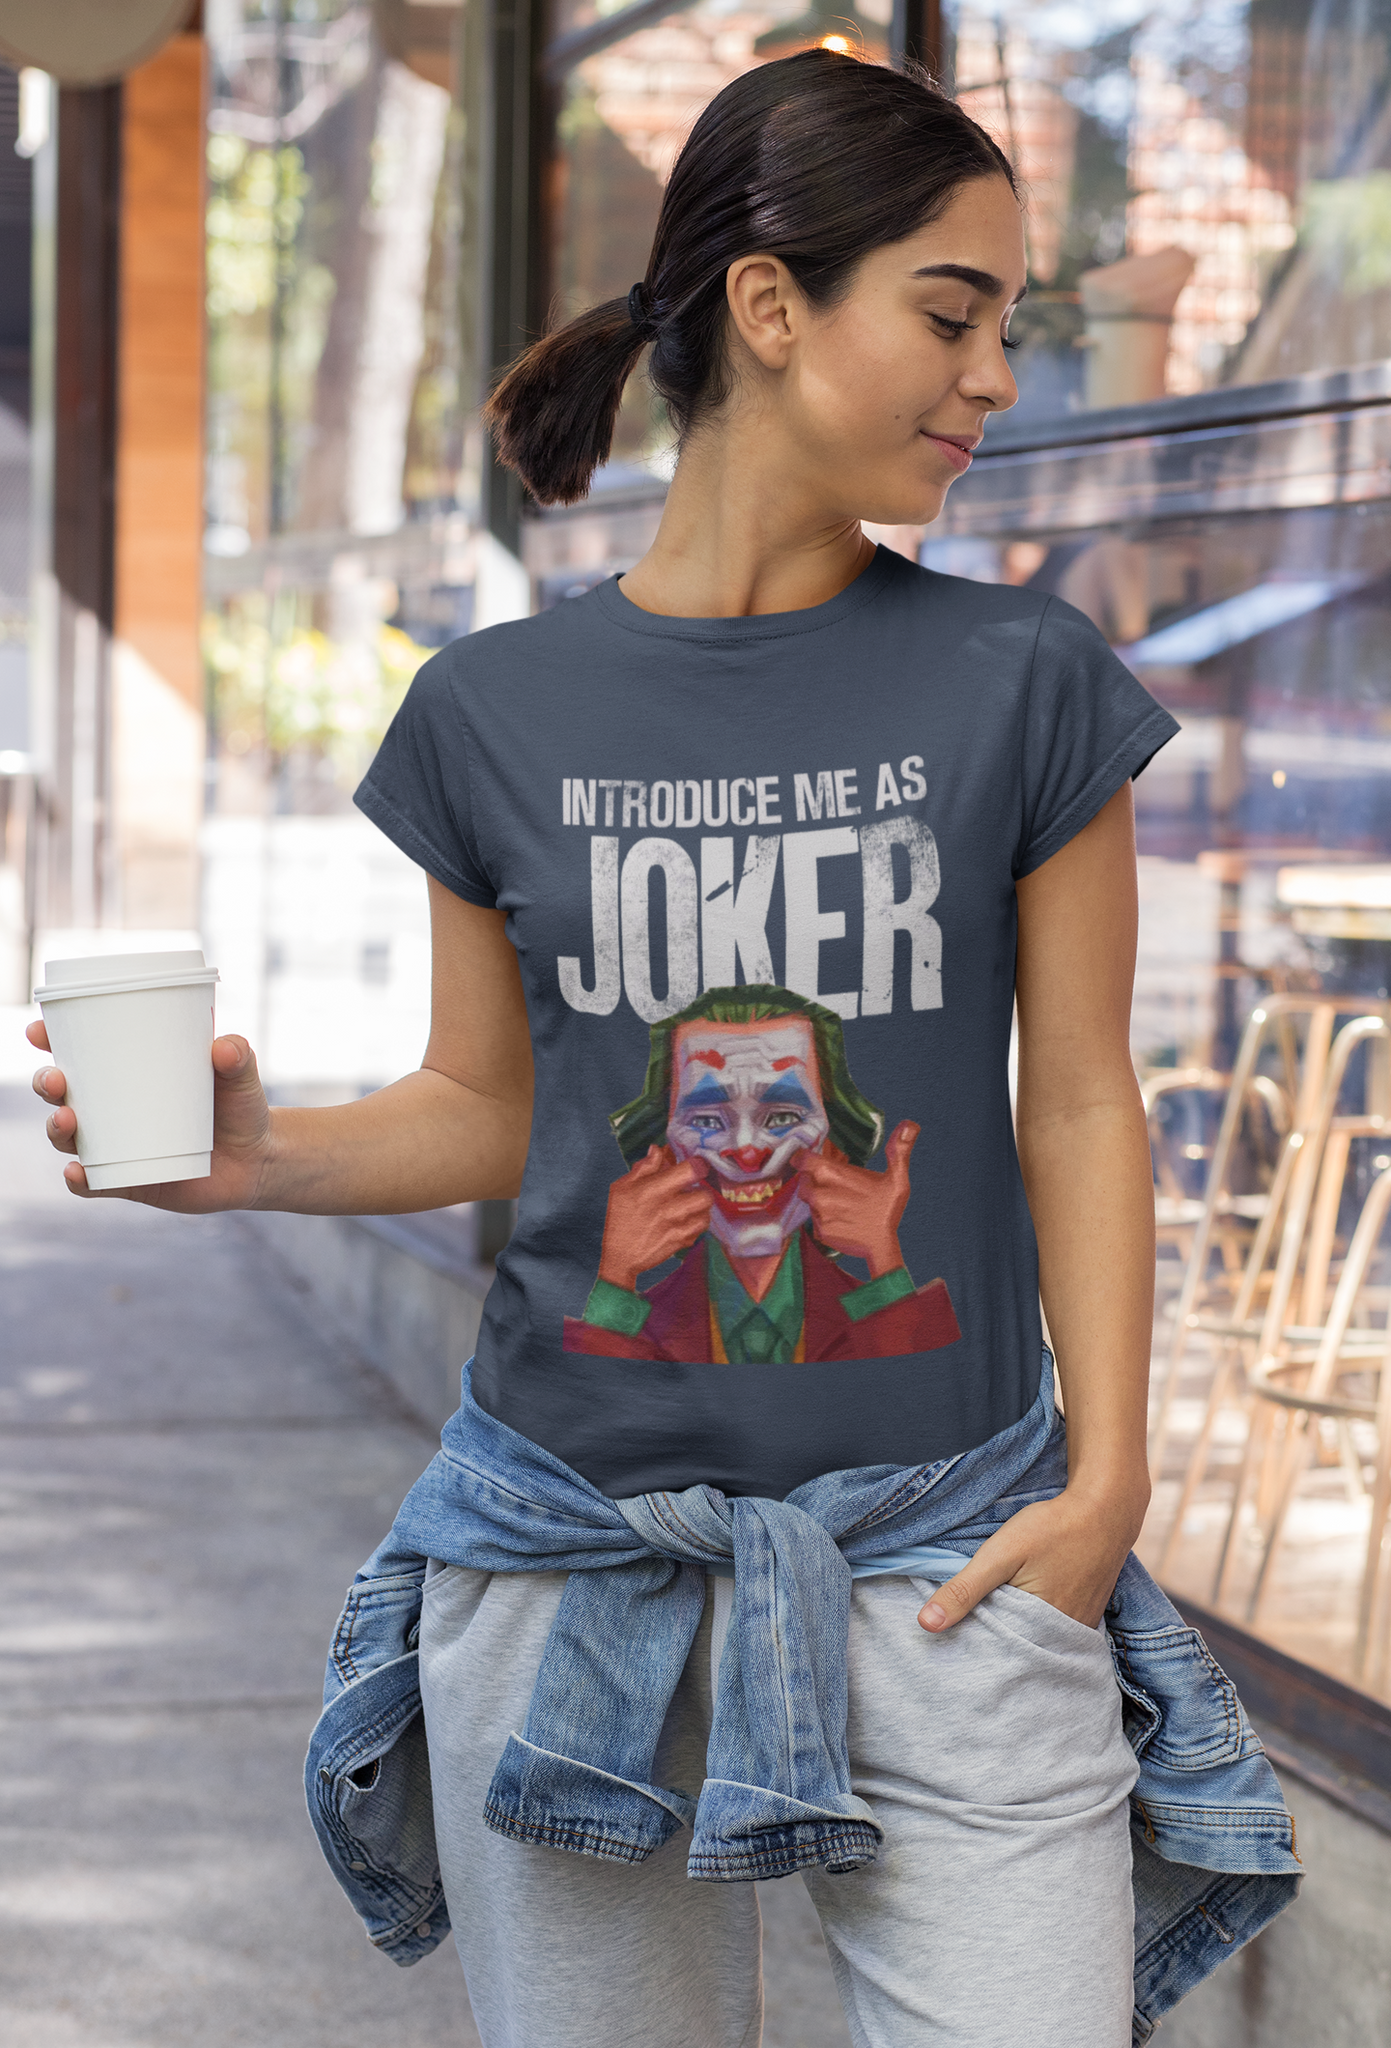 Joker T Shirt, Joker The Comedian T Shirt, Introduce Me As Joker Tshirt, Halloween Gifts